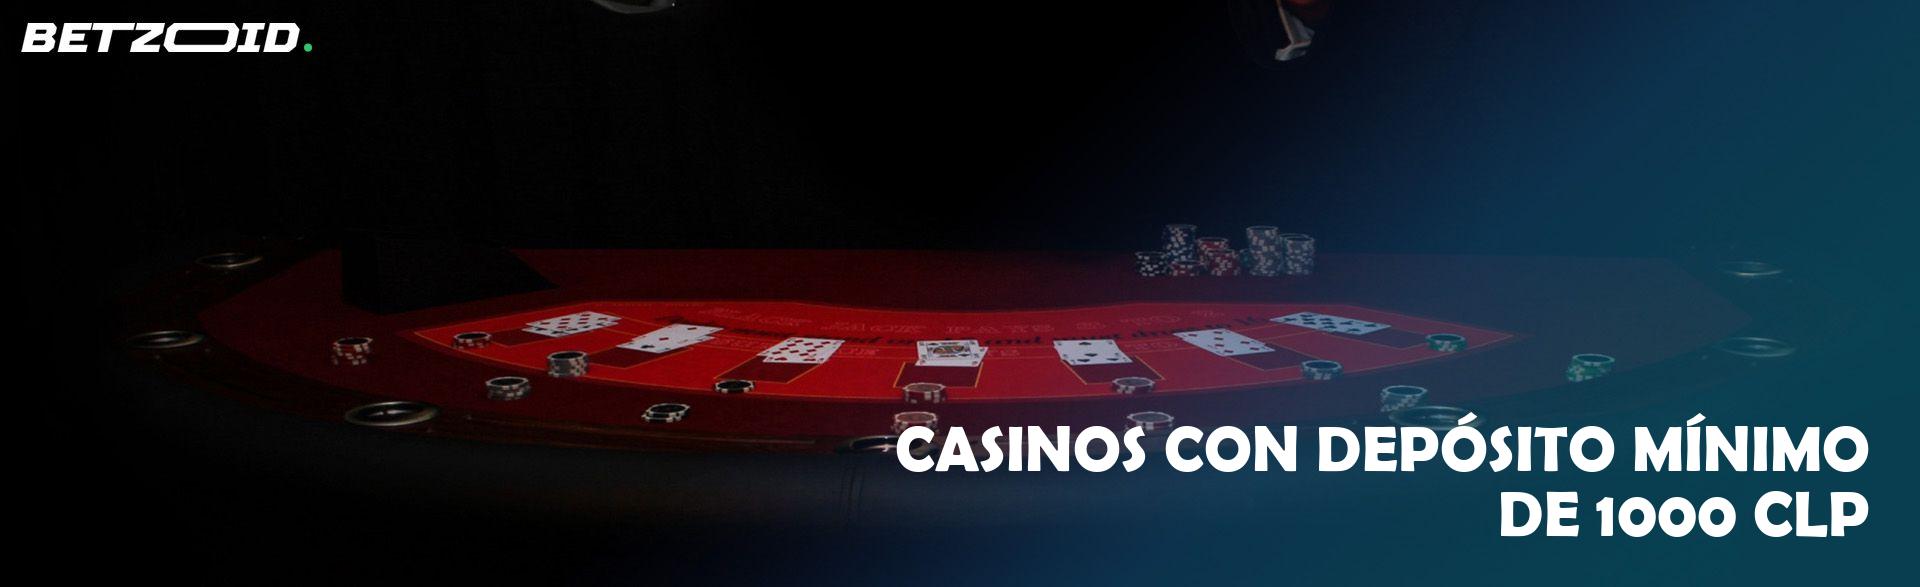 Casinos con Depósito Mínimo de 1000 CLP.